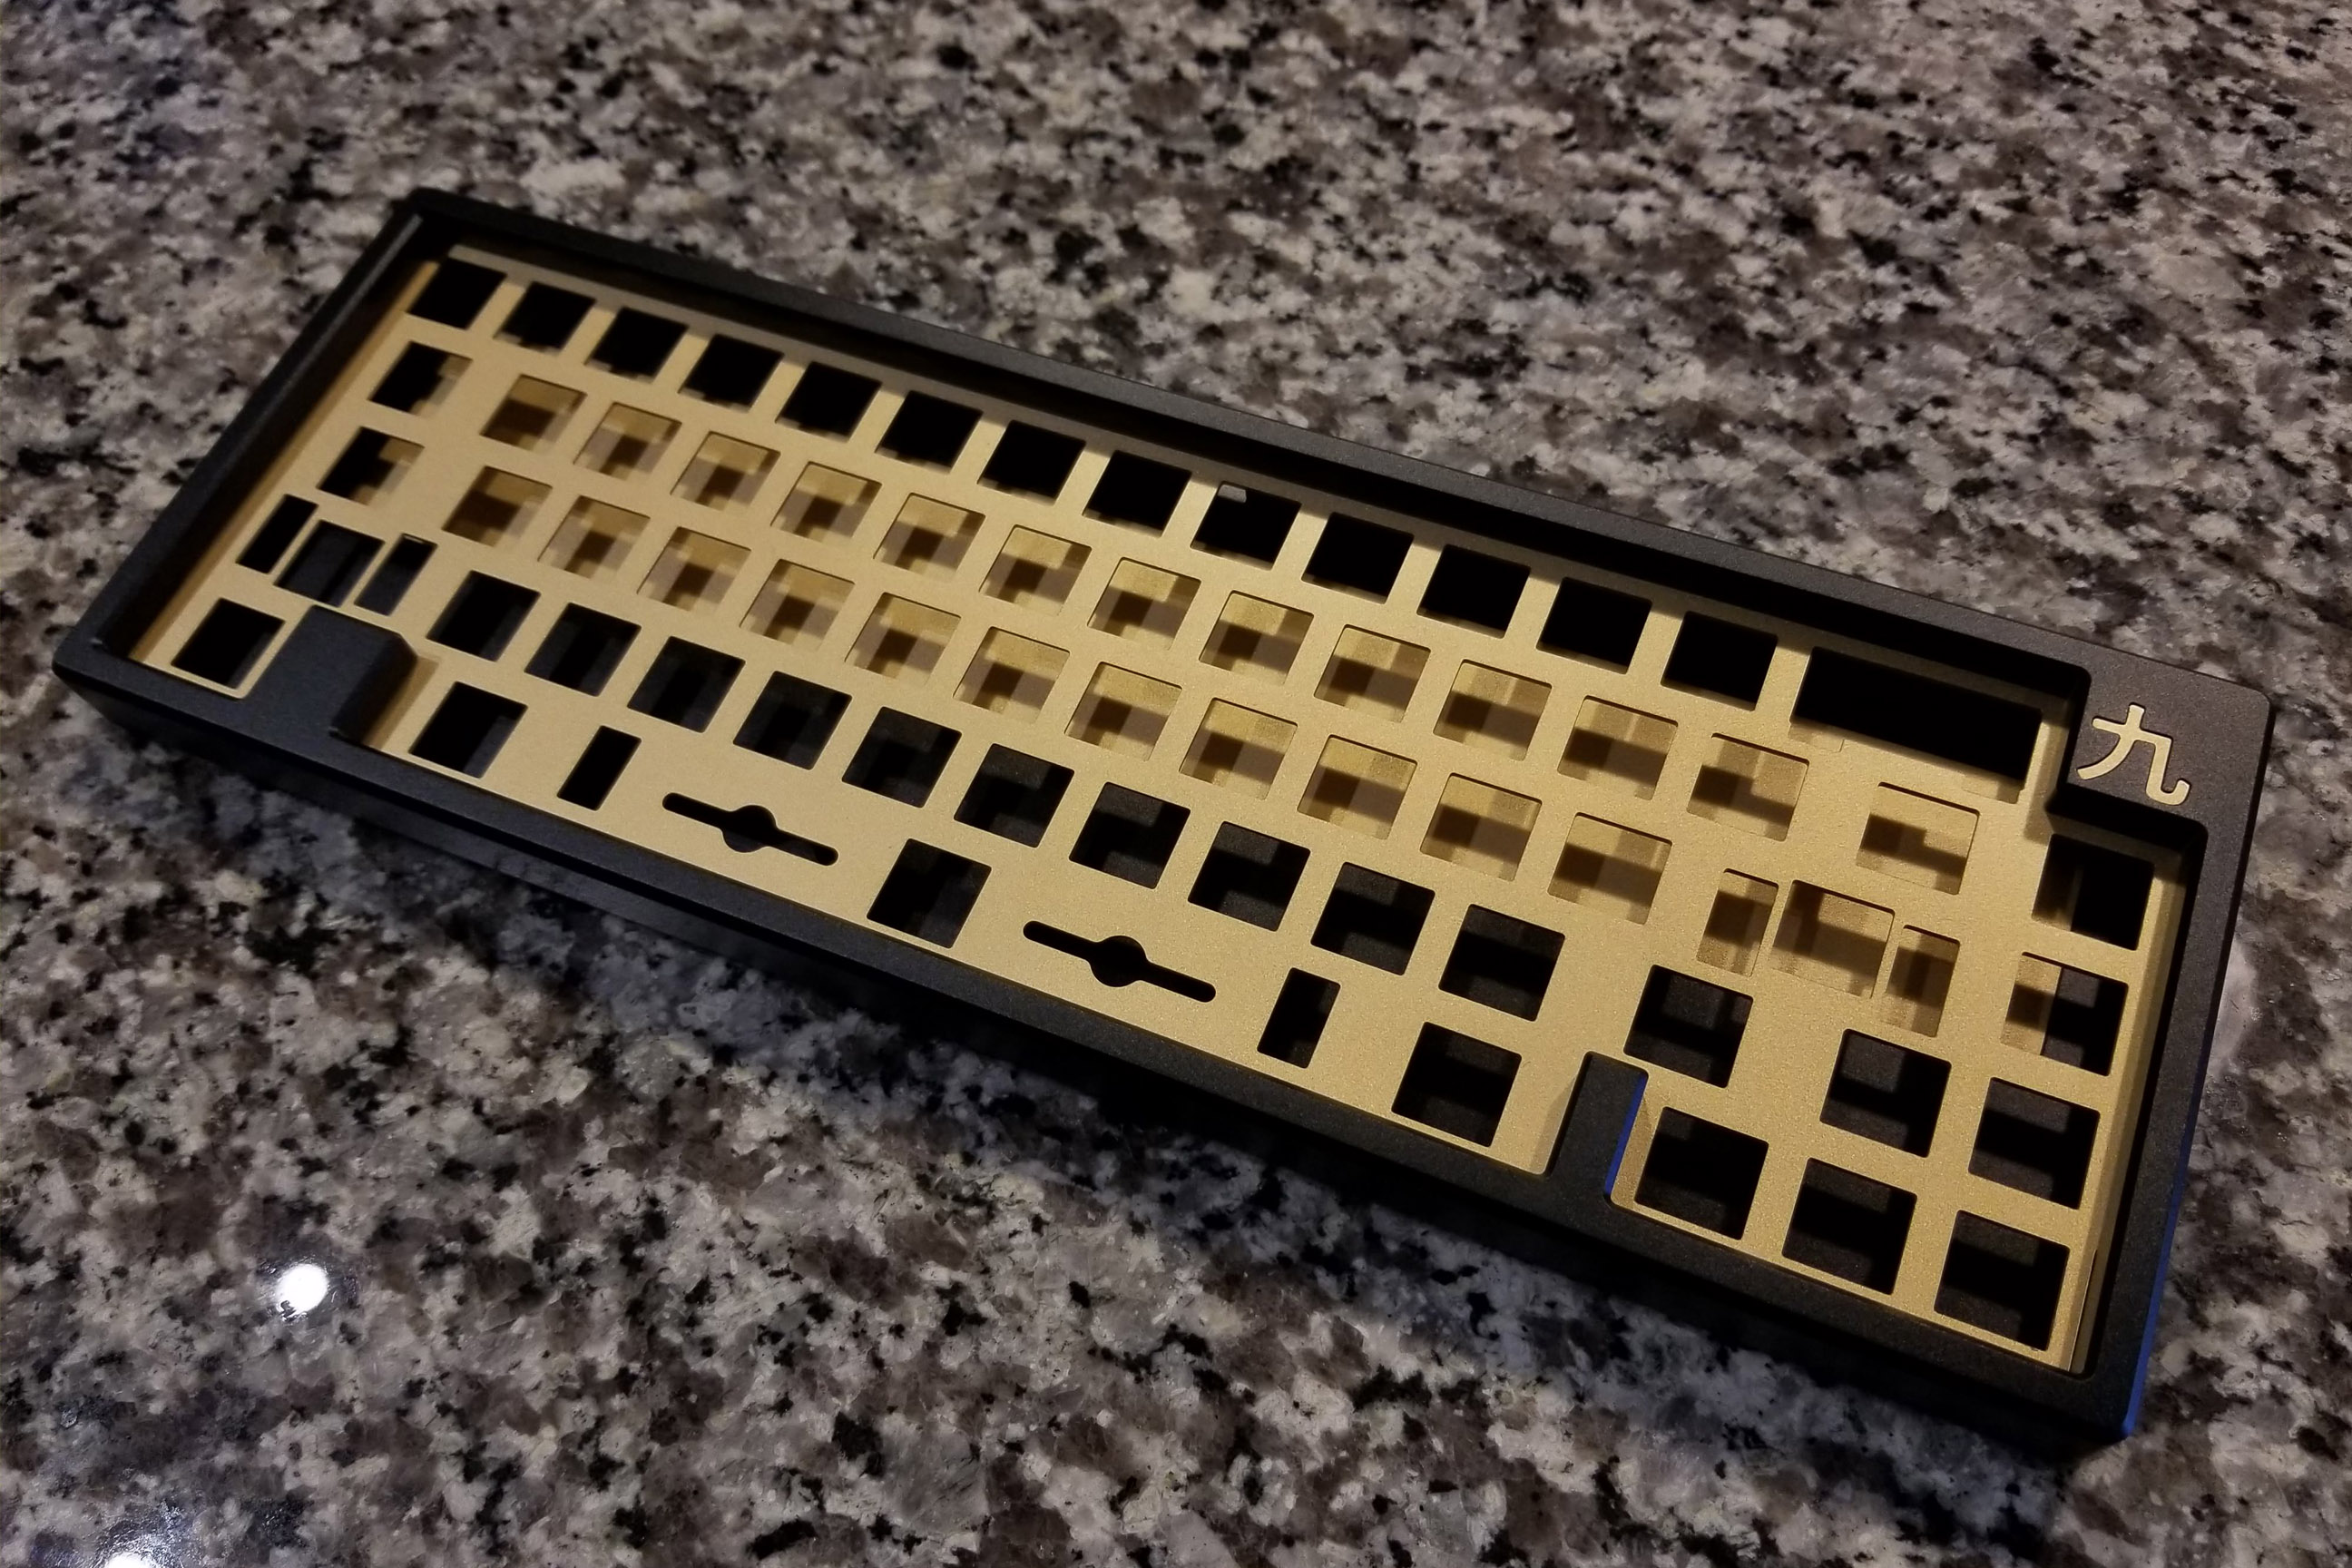 the Kyuu 65% keyboard